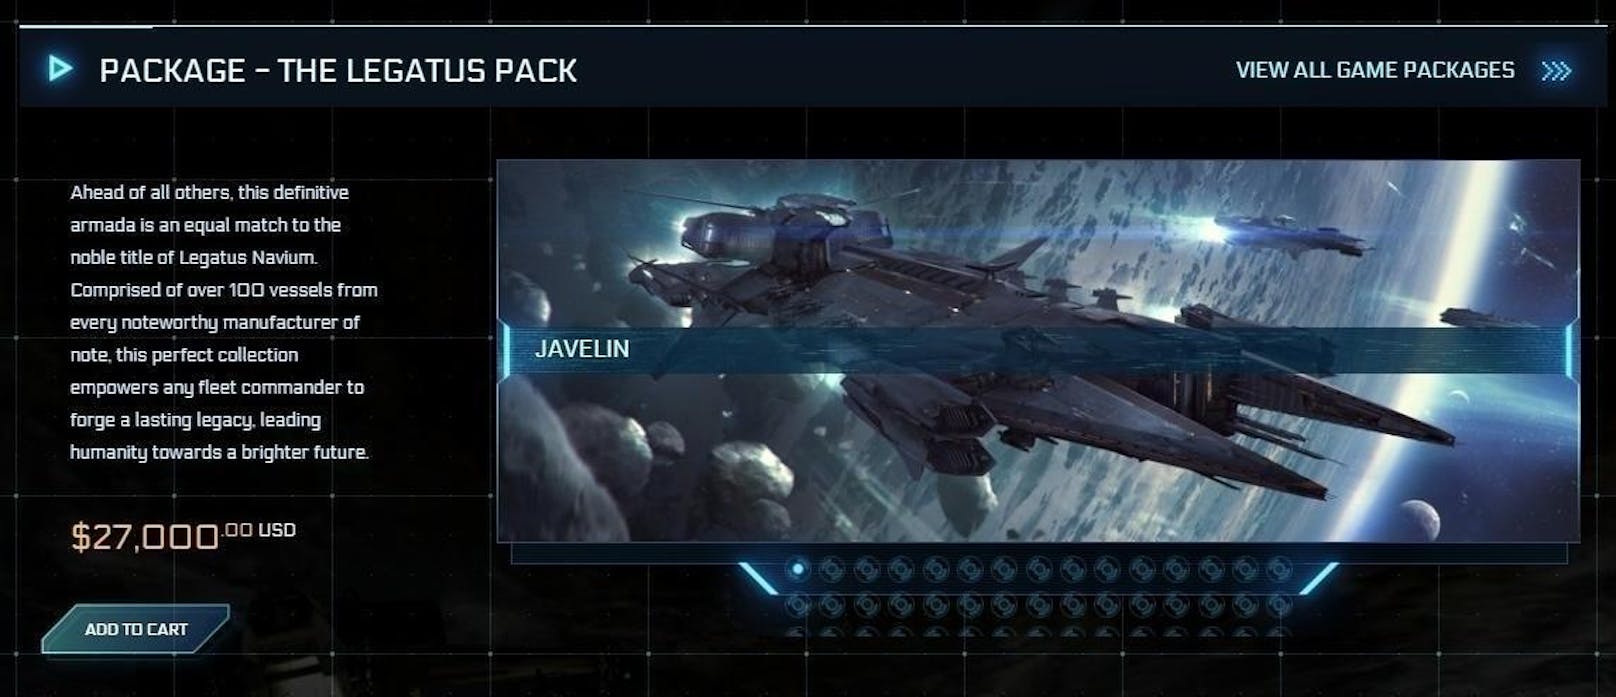 Mit Legatus gibt es im Spiel "Star Citizen" ein neues Download-Paket. Kostenpunkt: 27.000 US-Dollar. Dafür erhalten die Gamer eine umfangreiche Sammlung an Raumschiffen für das Spiel.